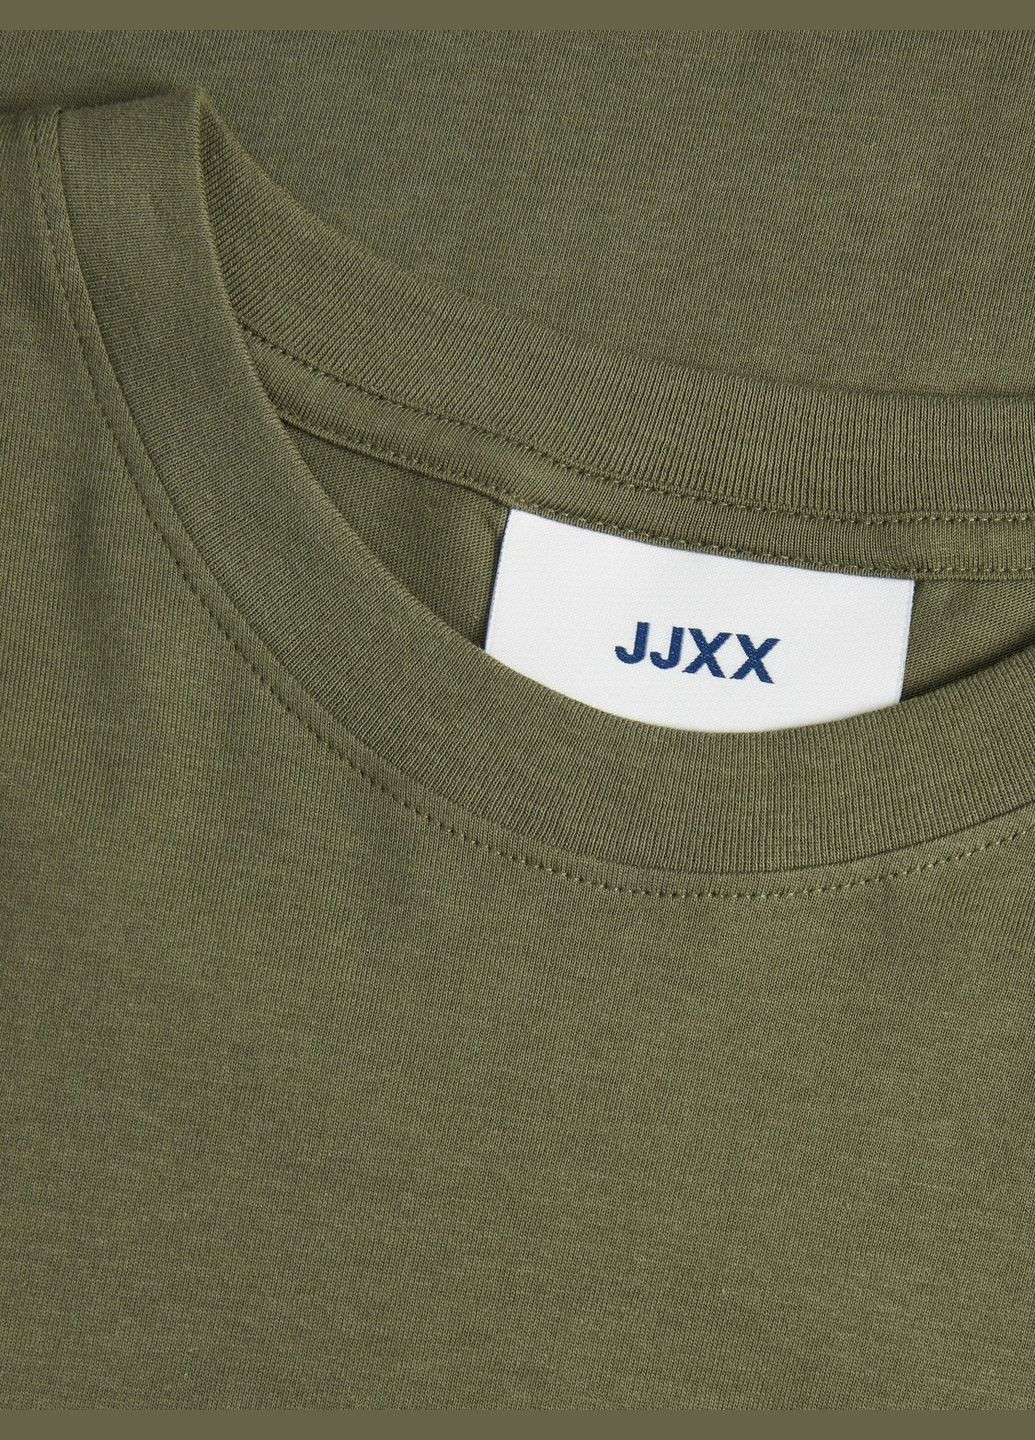 Хаки (оливковая) футболка JJXX